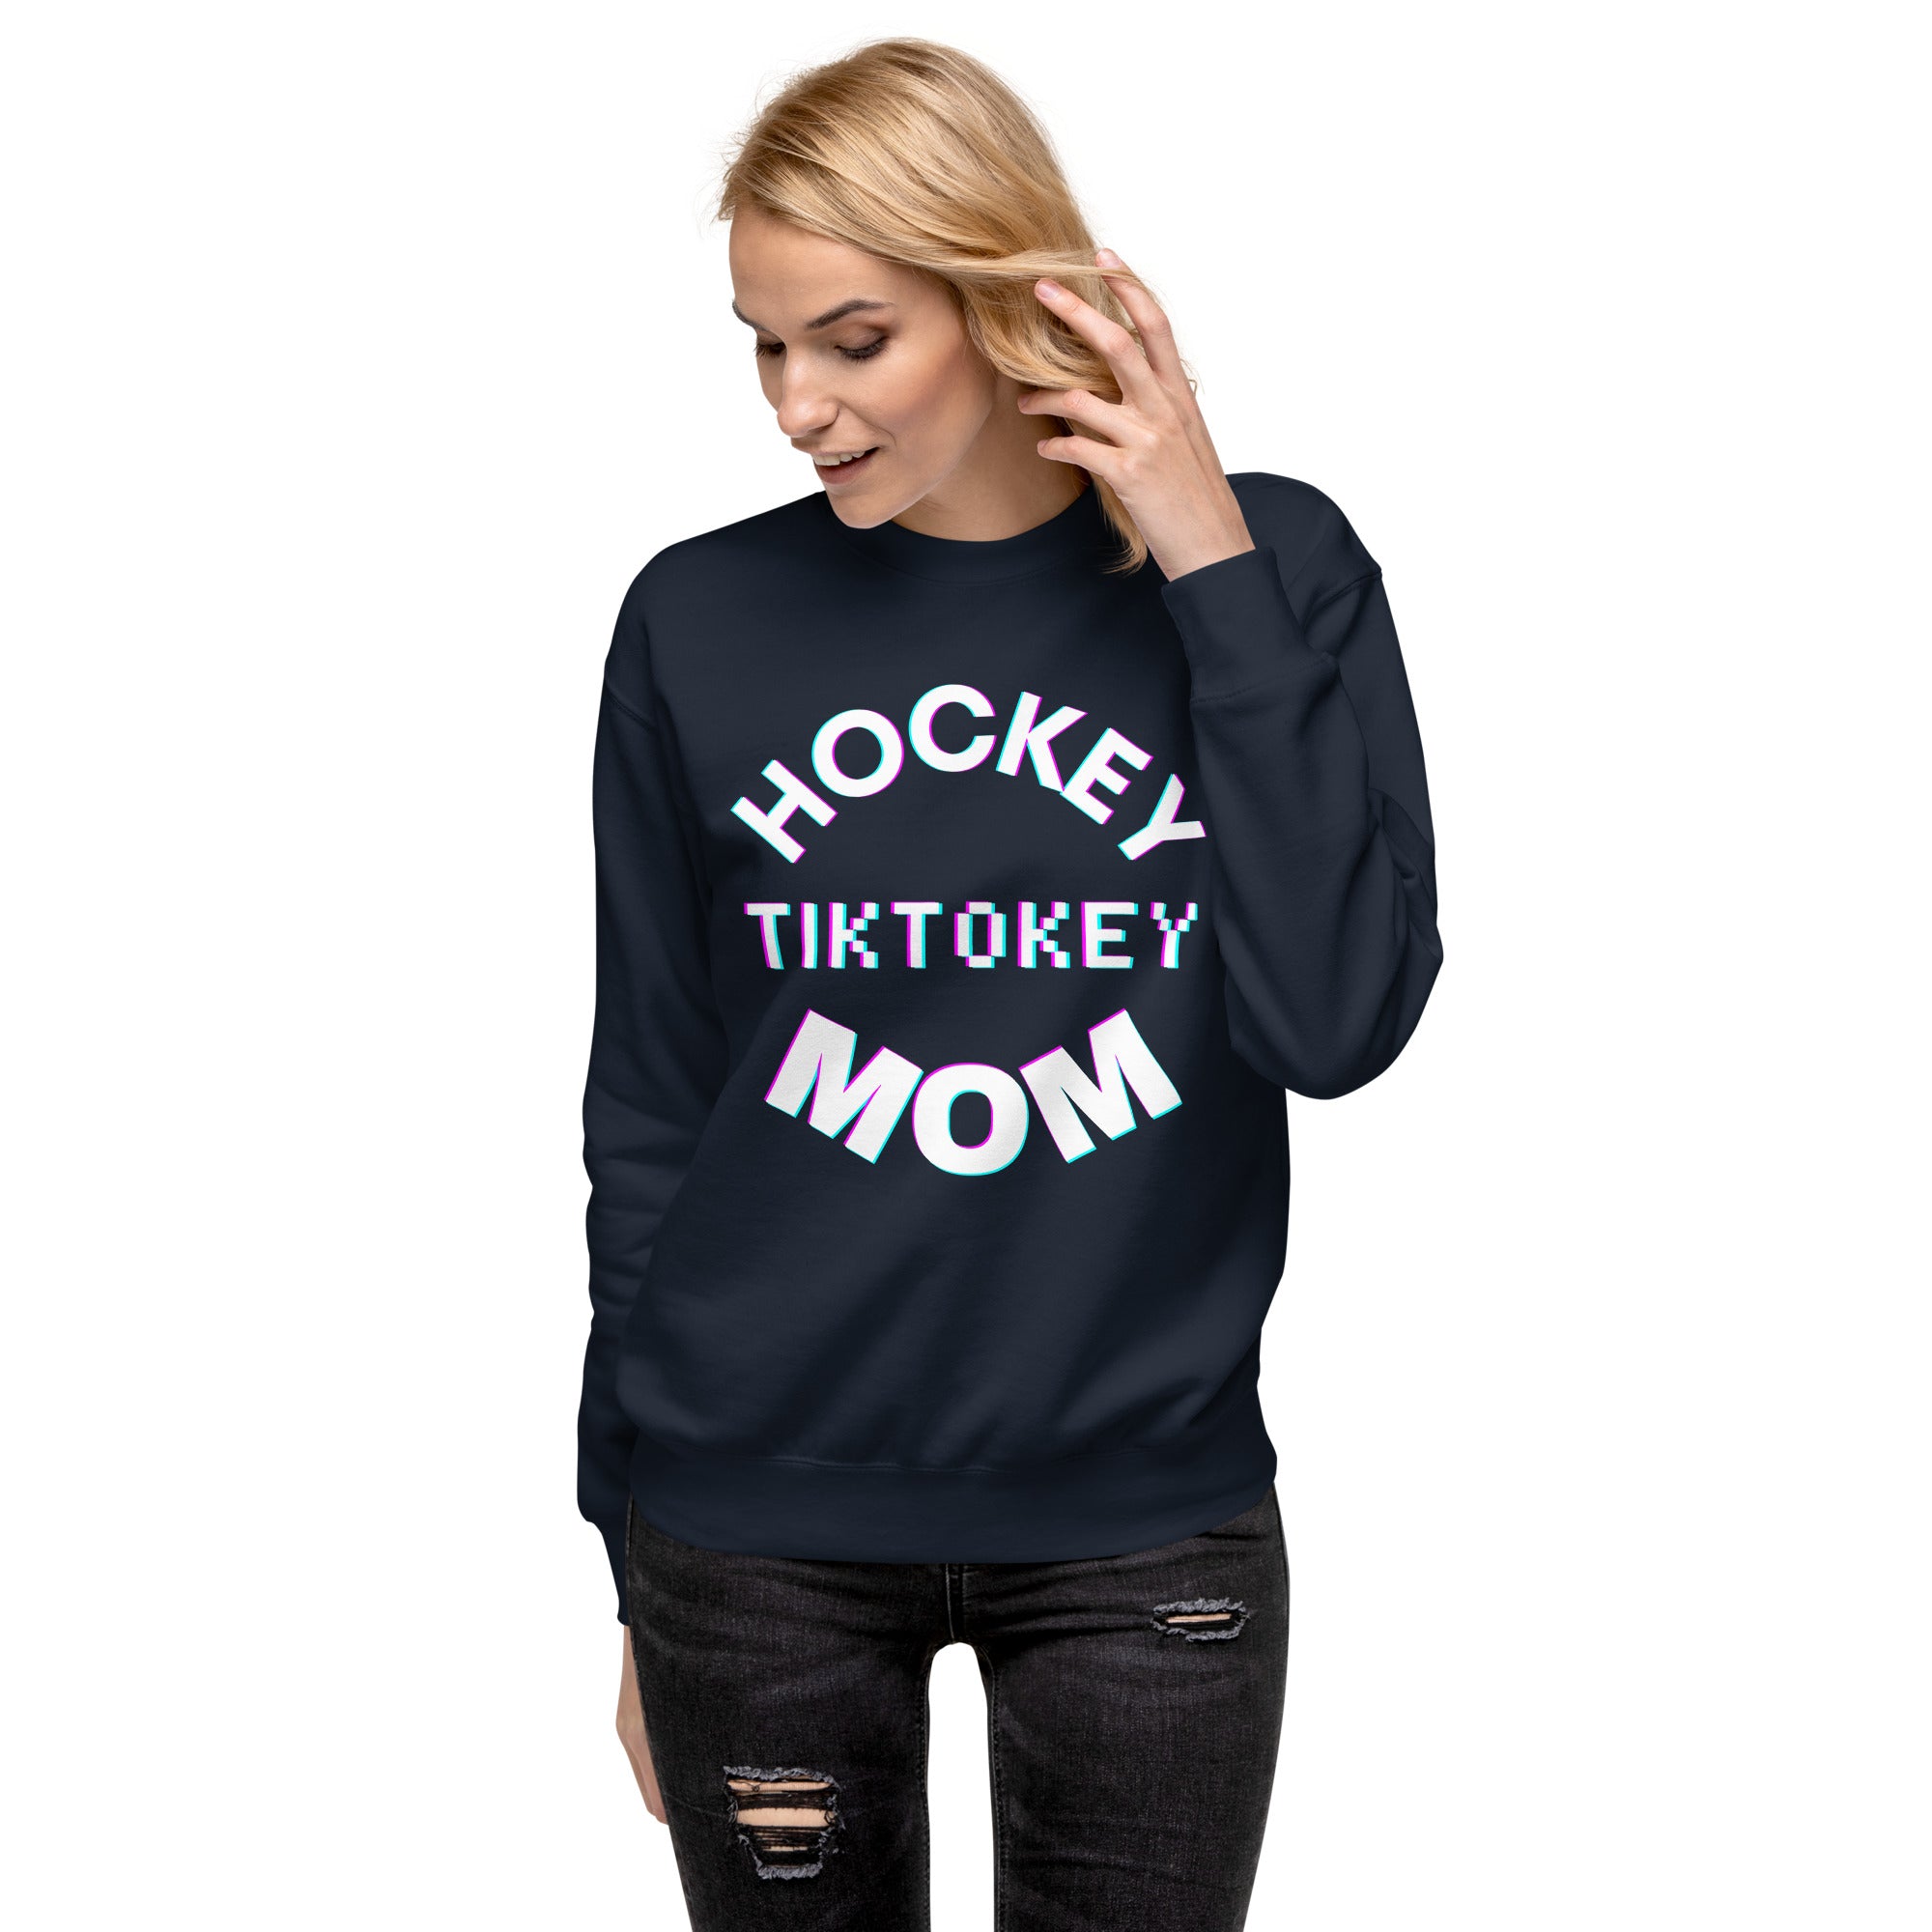 Hockey Tiktokey Women's Premium Sweatshirt